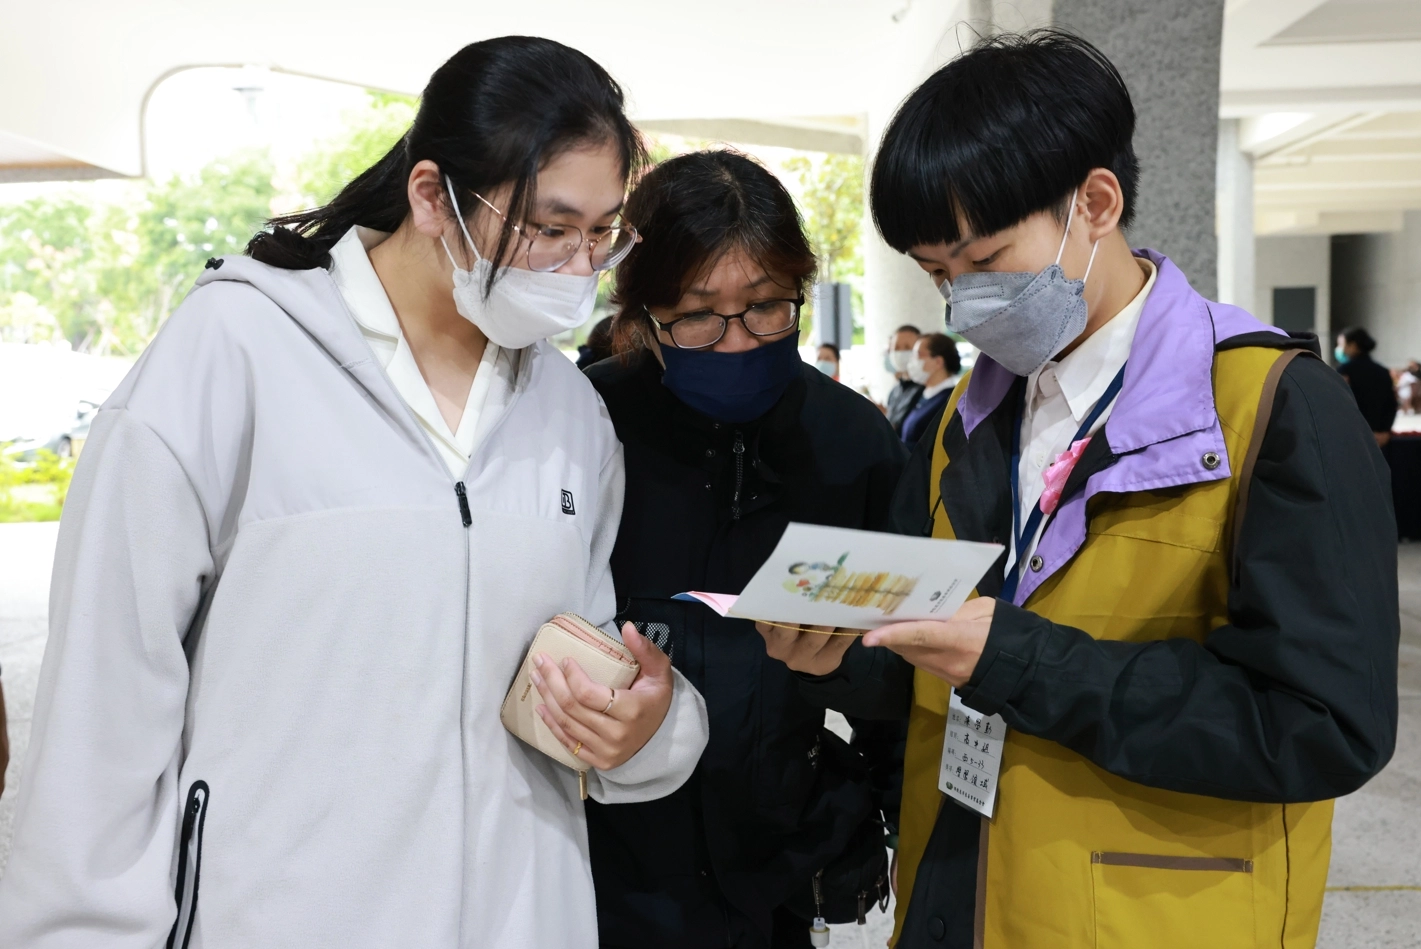 陳芳盈的弟弟陳學勤(右一)也在新芽活動中承擔志工服務人群。